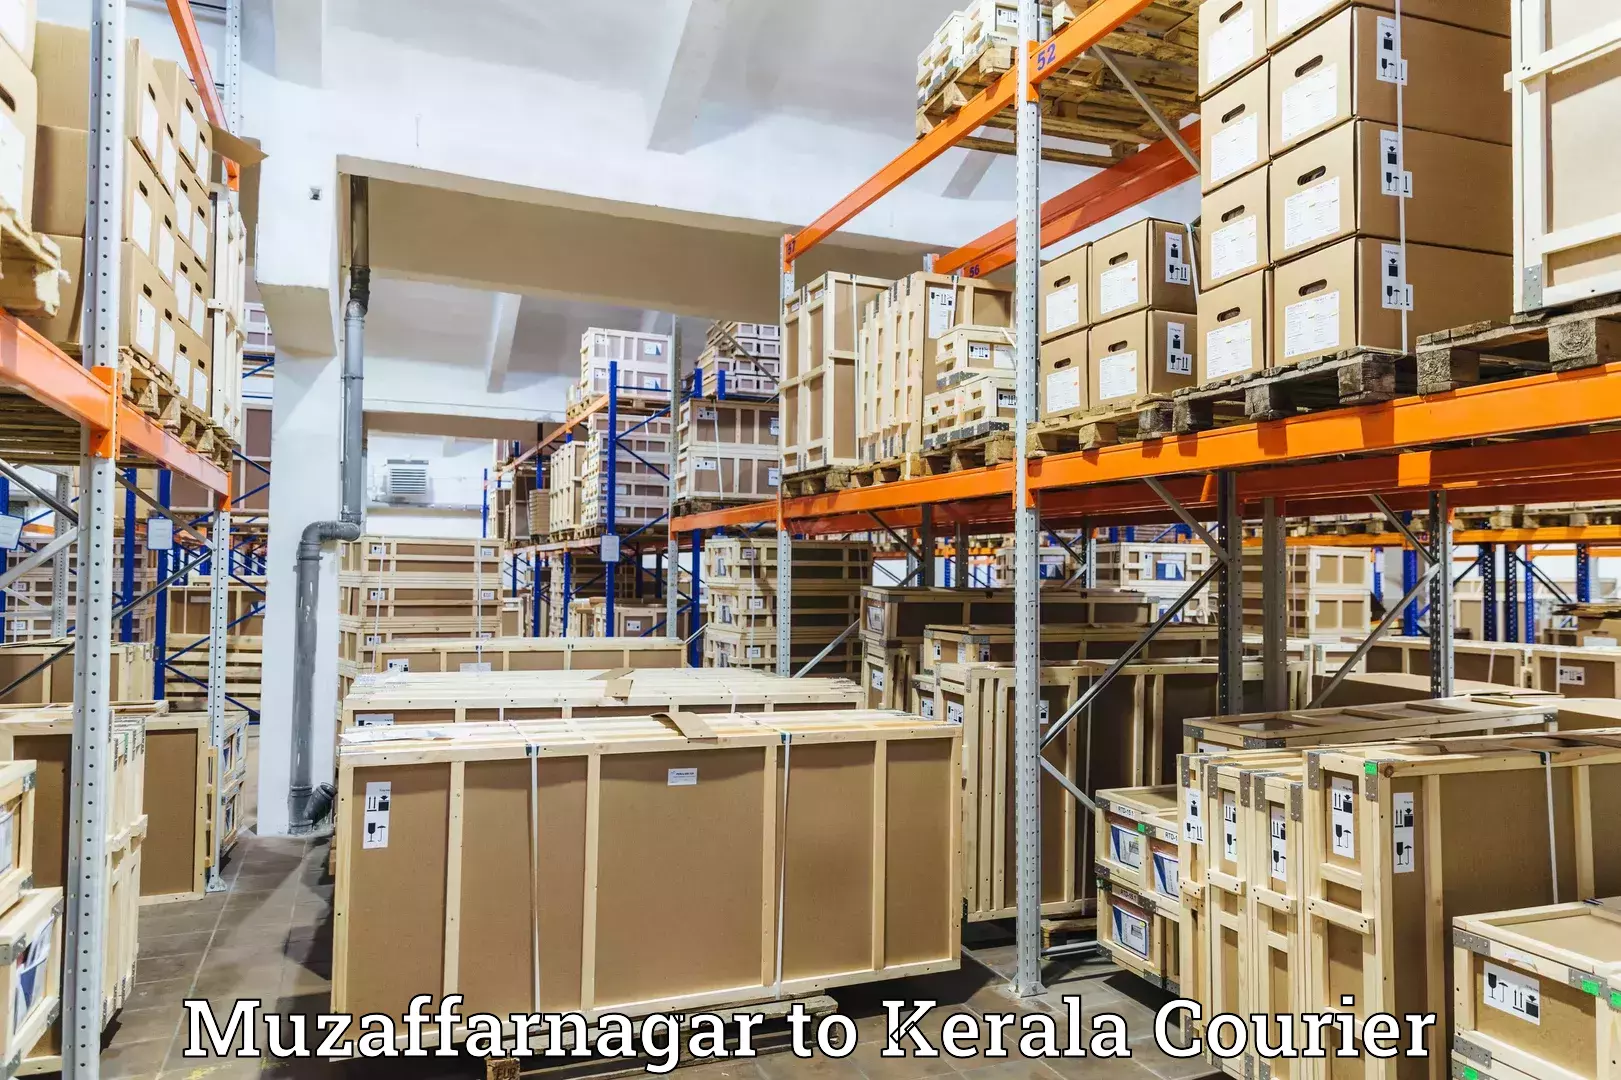 Global freight services Muzaffarnagar to Thiruvananthapuram